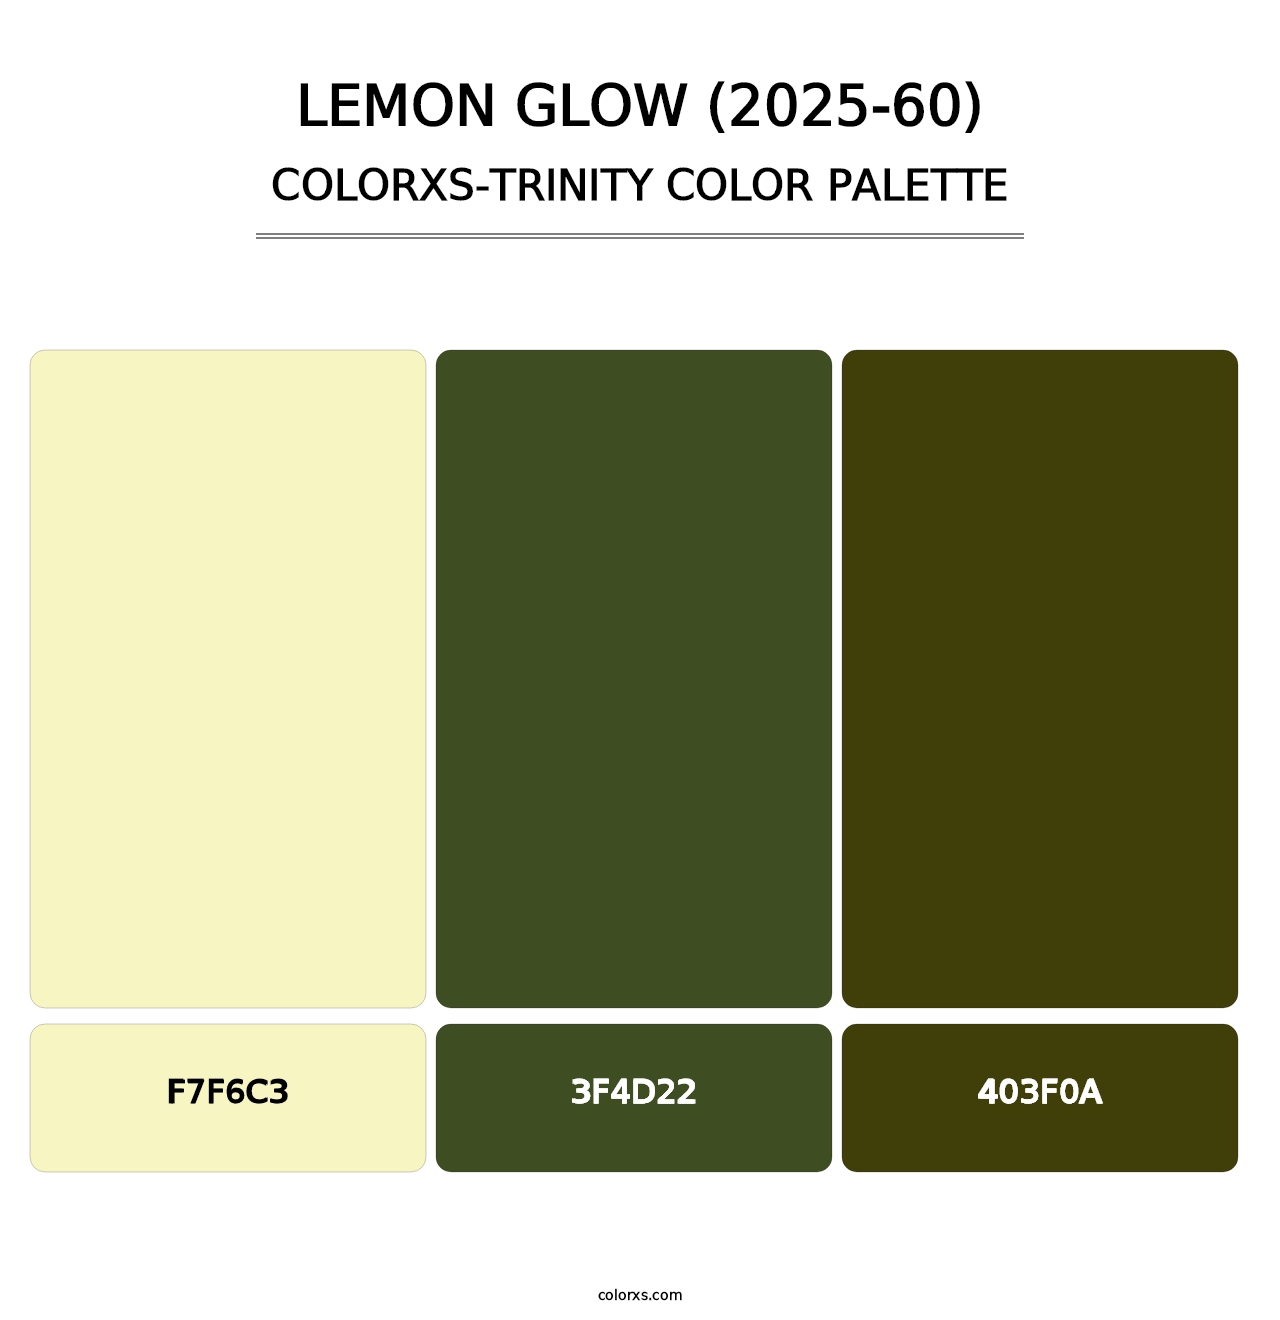 Lemon Glow (2025-60) - Colorxs Trinity Palette